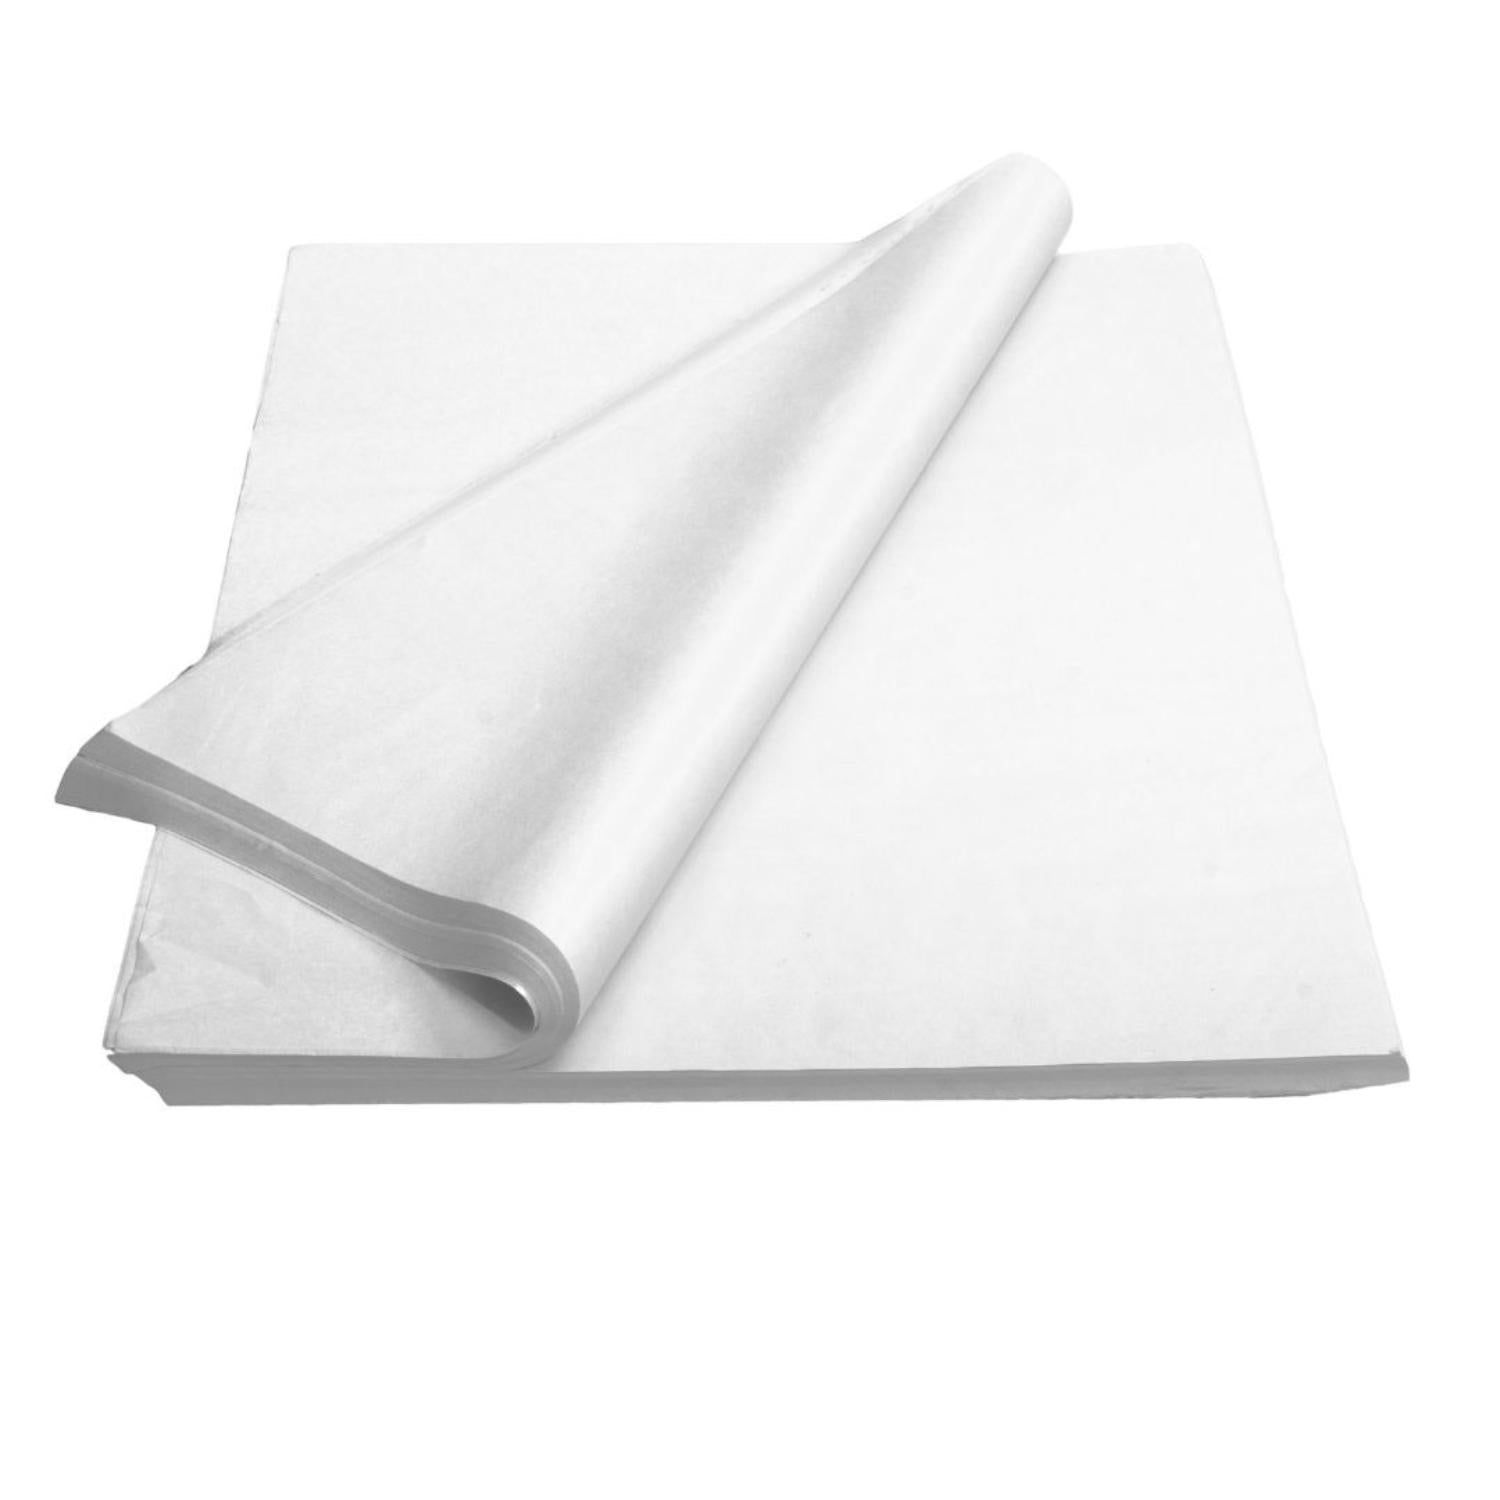 Eucalyptus Tissue Paper 20x30, Bulk 200 Sheet Pack